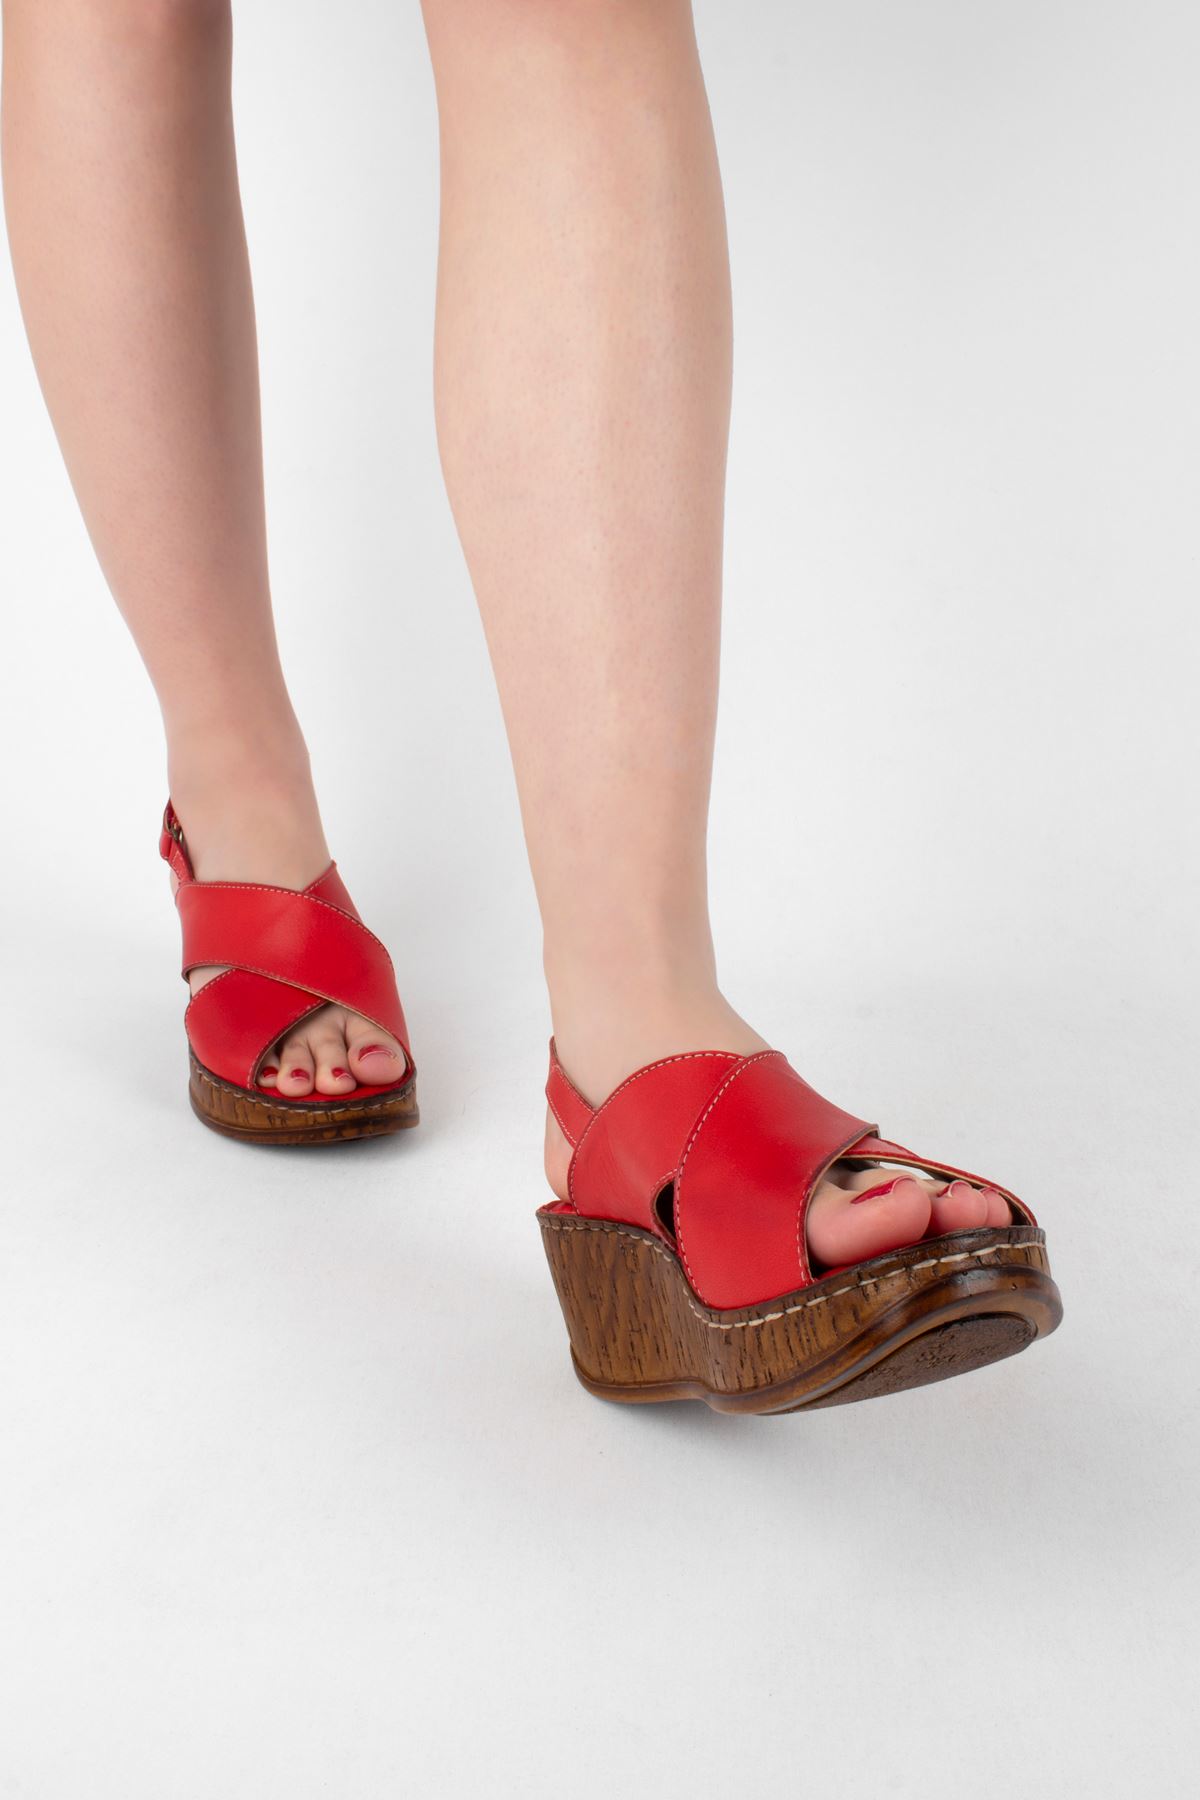 Kadın Hakiki Deri Dolgu Topuk Ayakkabı Çapraz Detaylı-Kırmızı